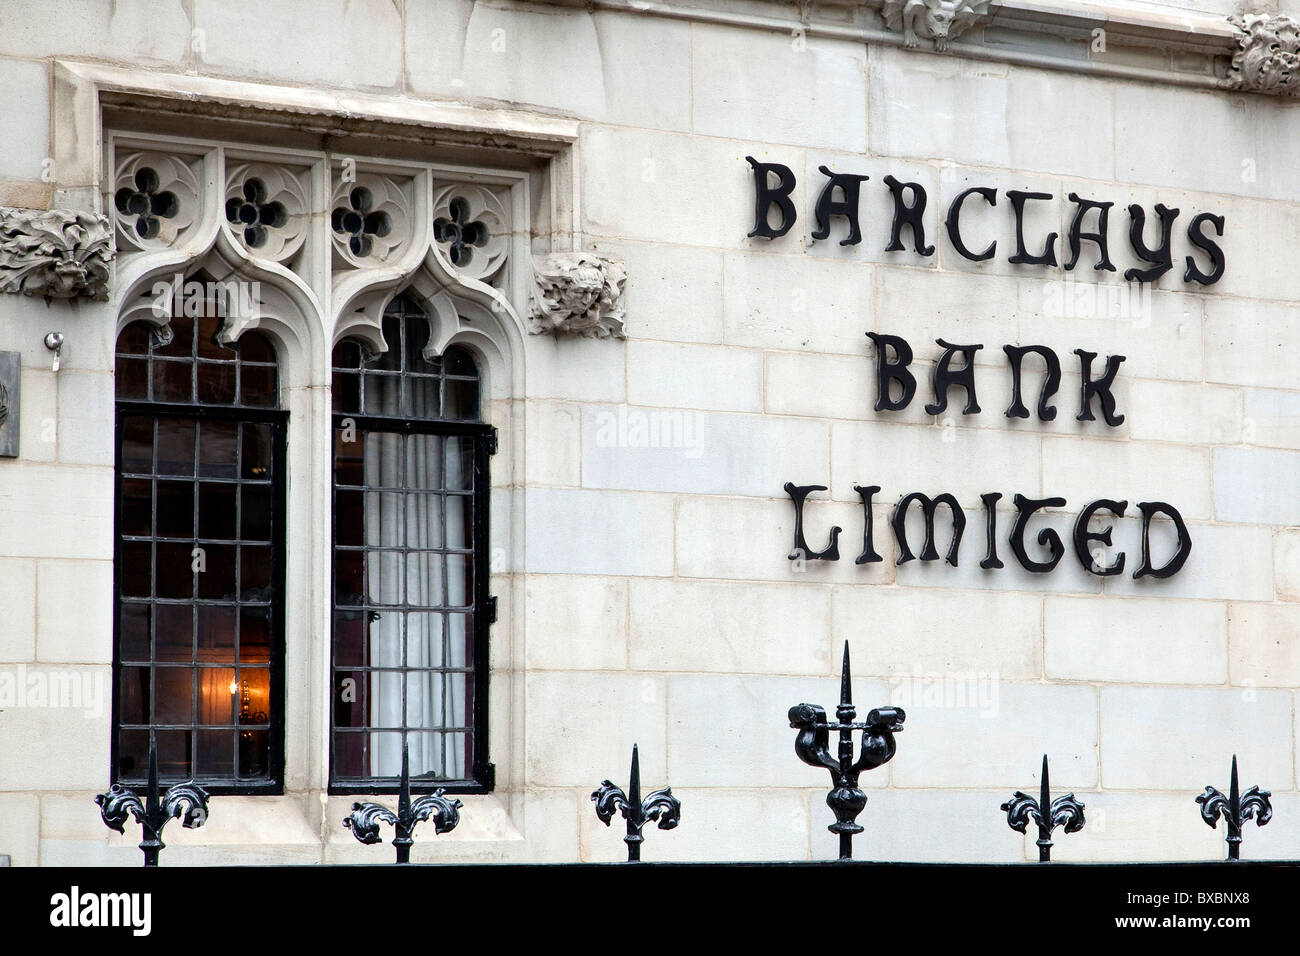 Filiale de la banque Barclays dans un vieux bâtiment à Londres, Angleterre, Royaume-Uni, Europe Banque D'Images